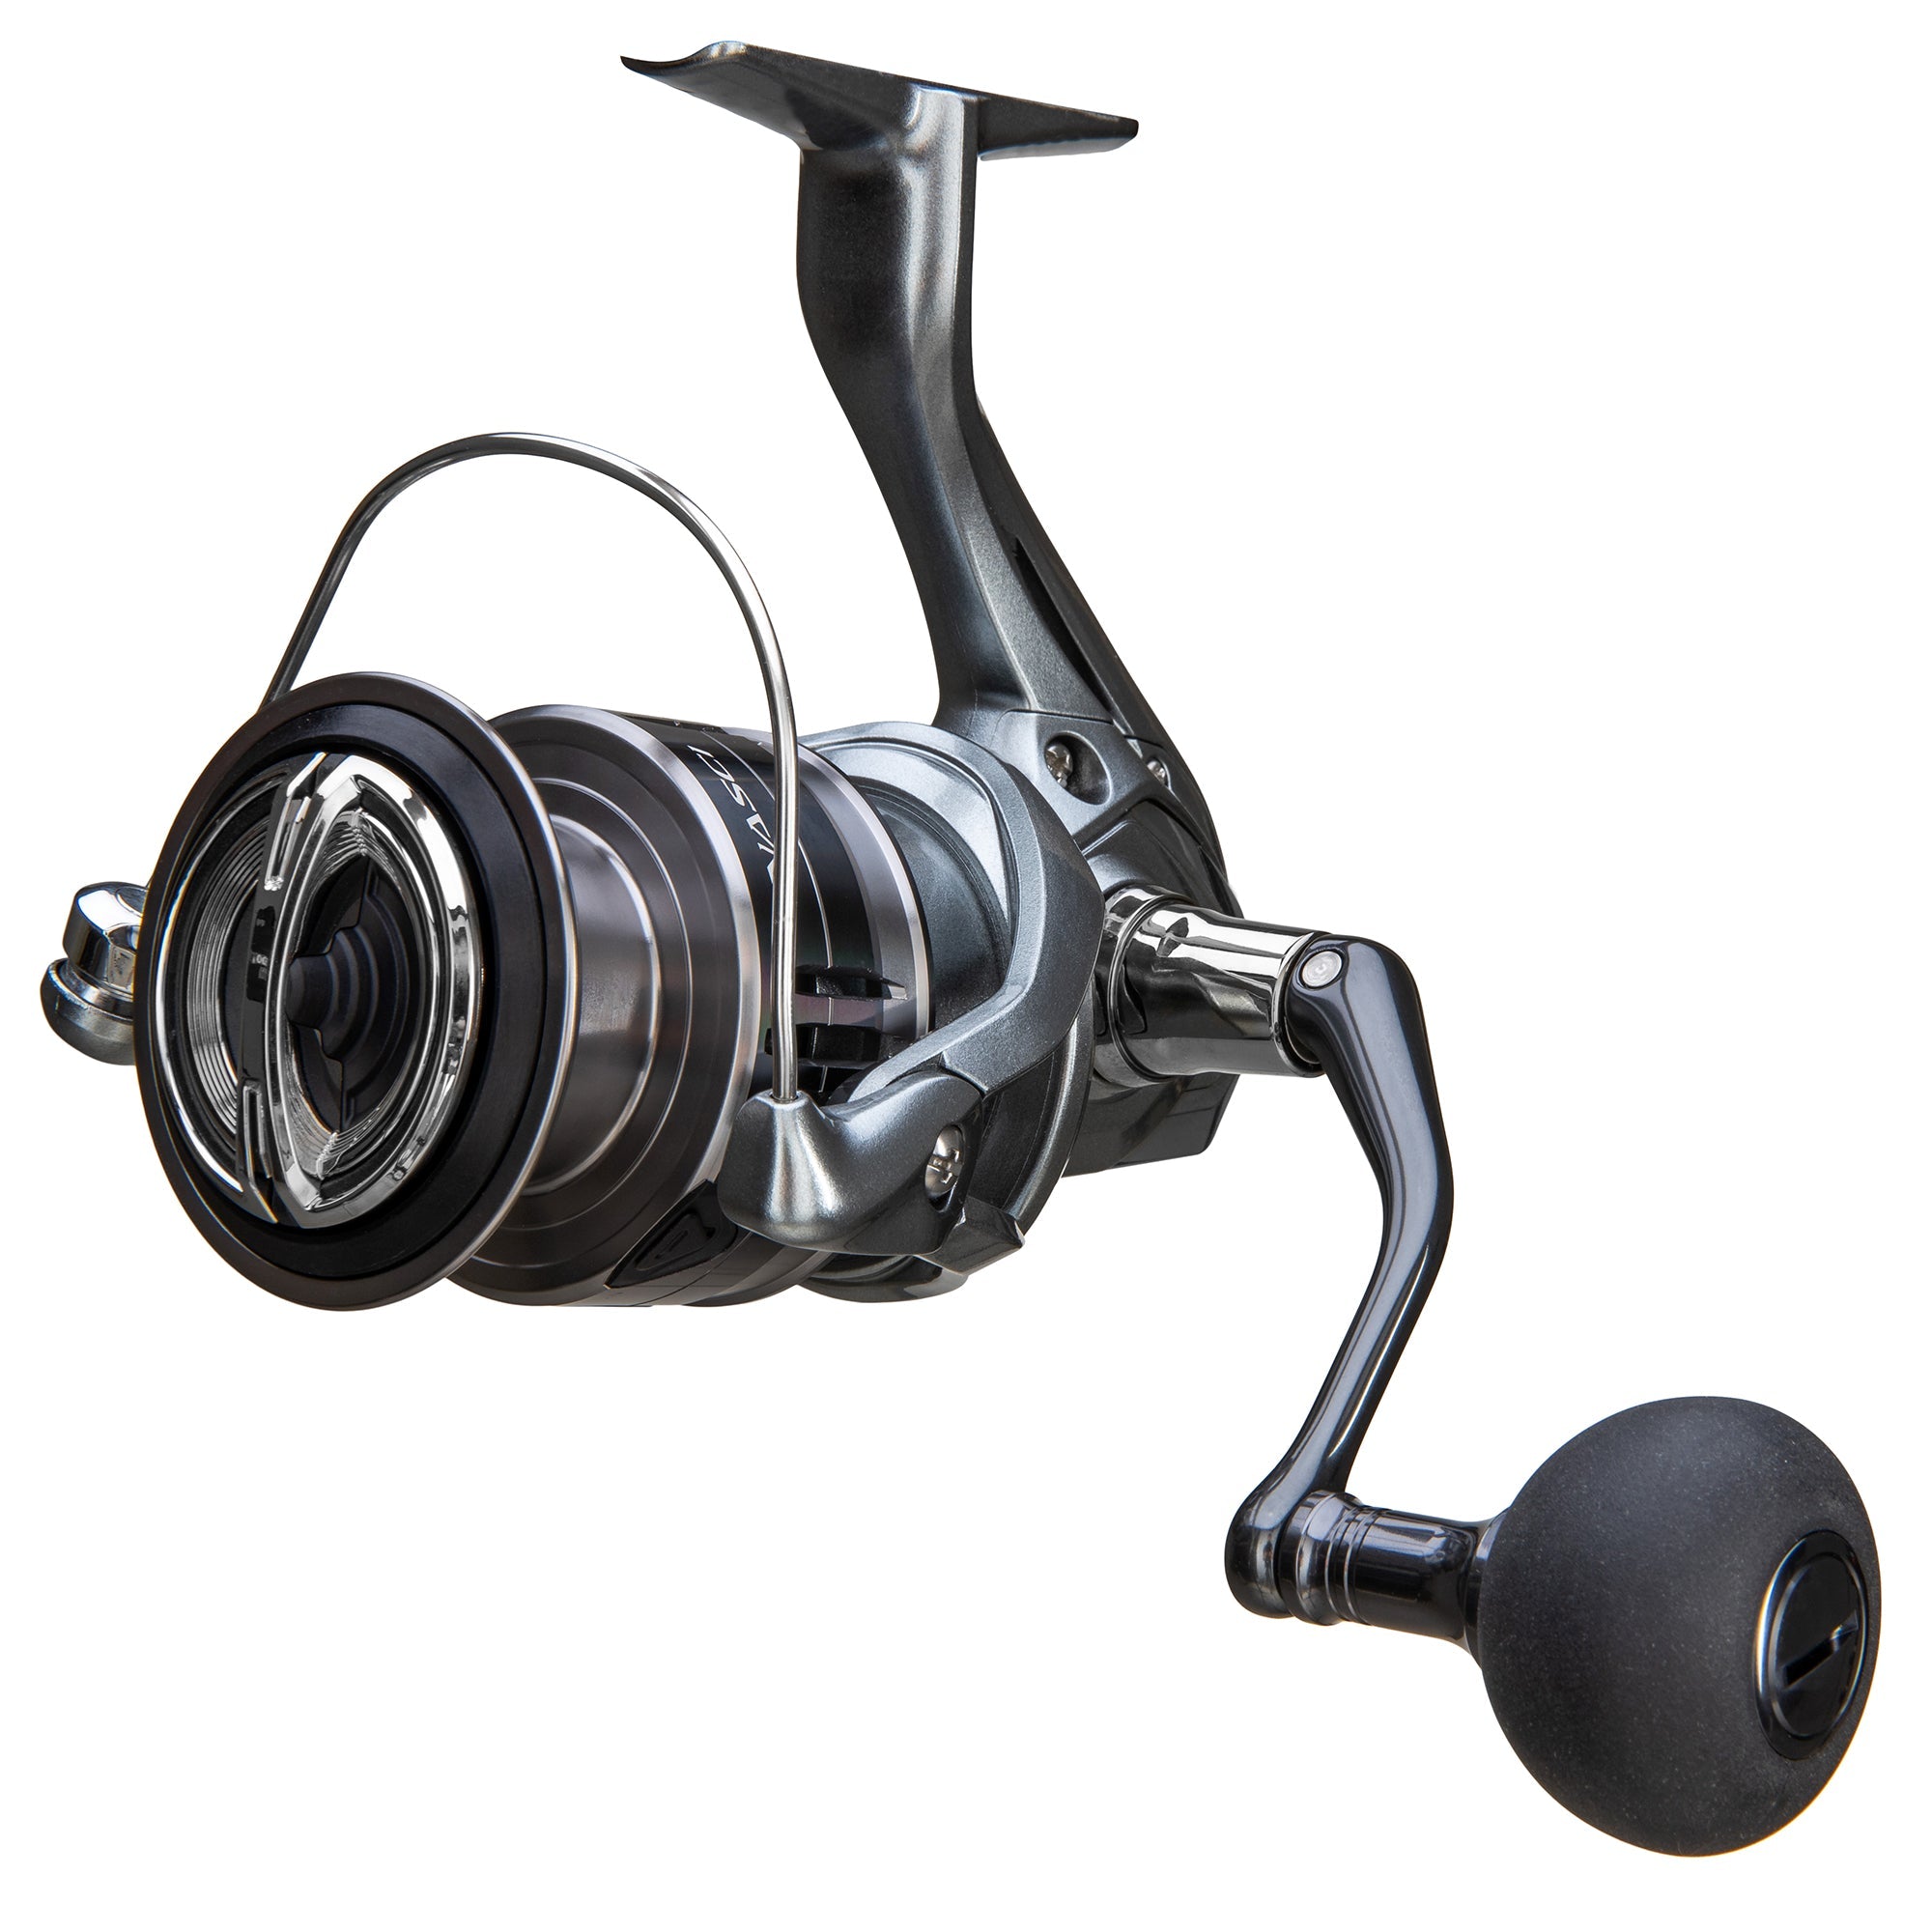 Fishing Reel Shimano Stradic C5000XG Spinning Reels at best price